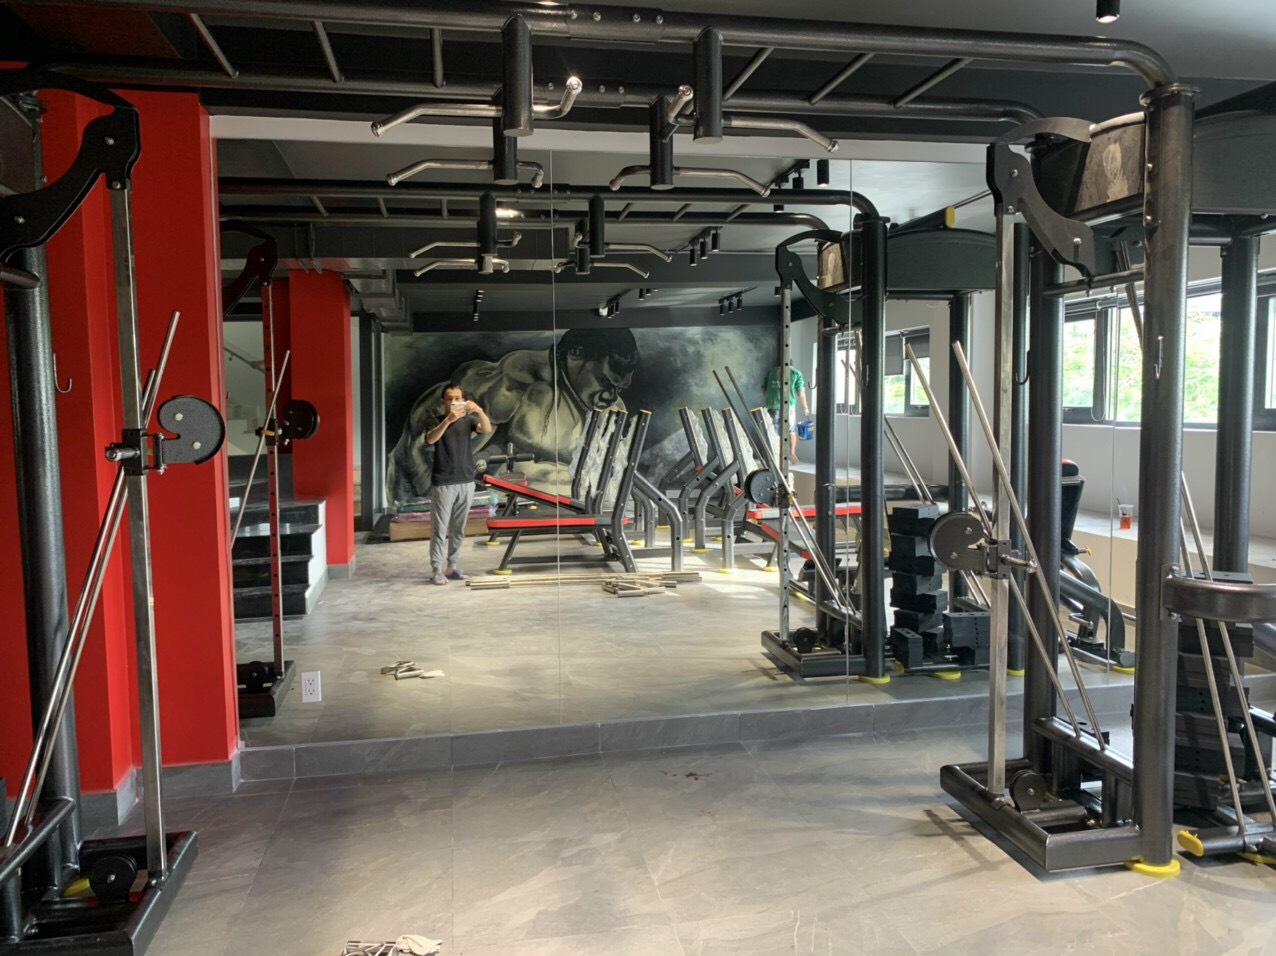 Thi Công Gương Kính Thủy Trang Trí Phòng Tập Gym - Yoga Tại TpHCM 2021